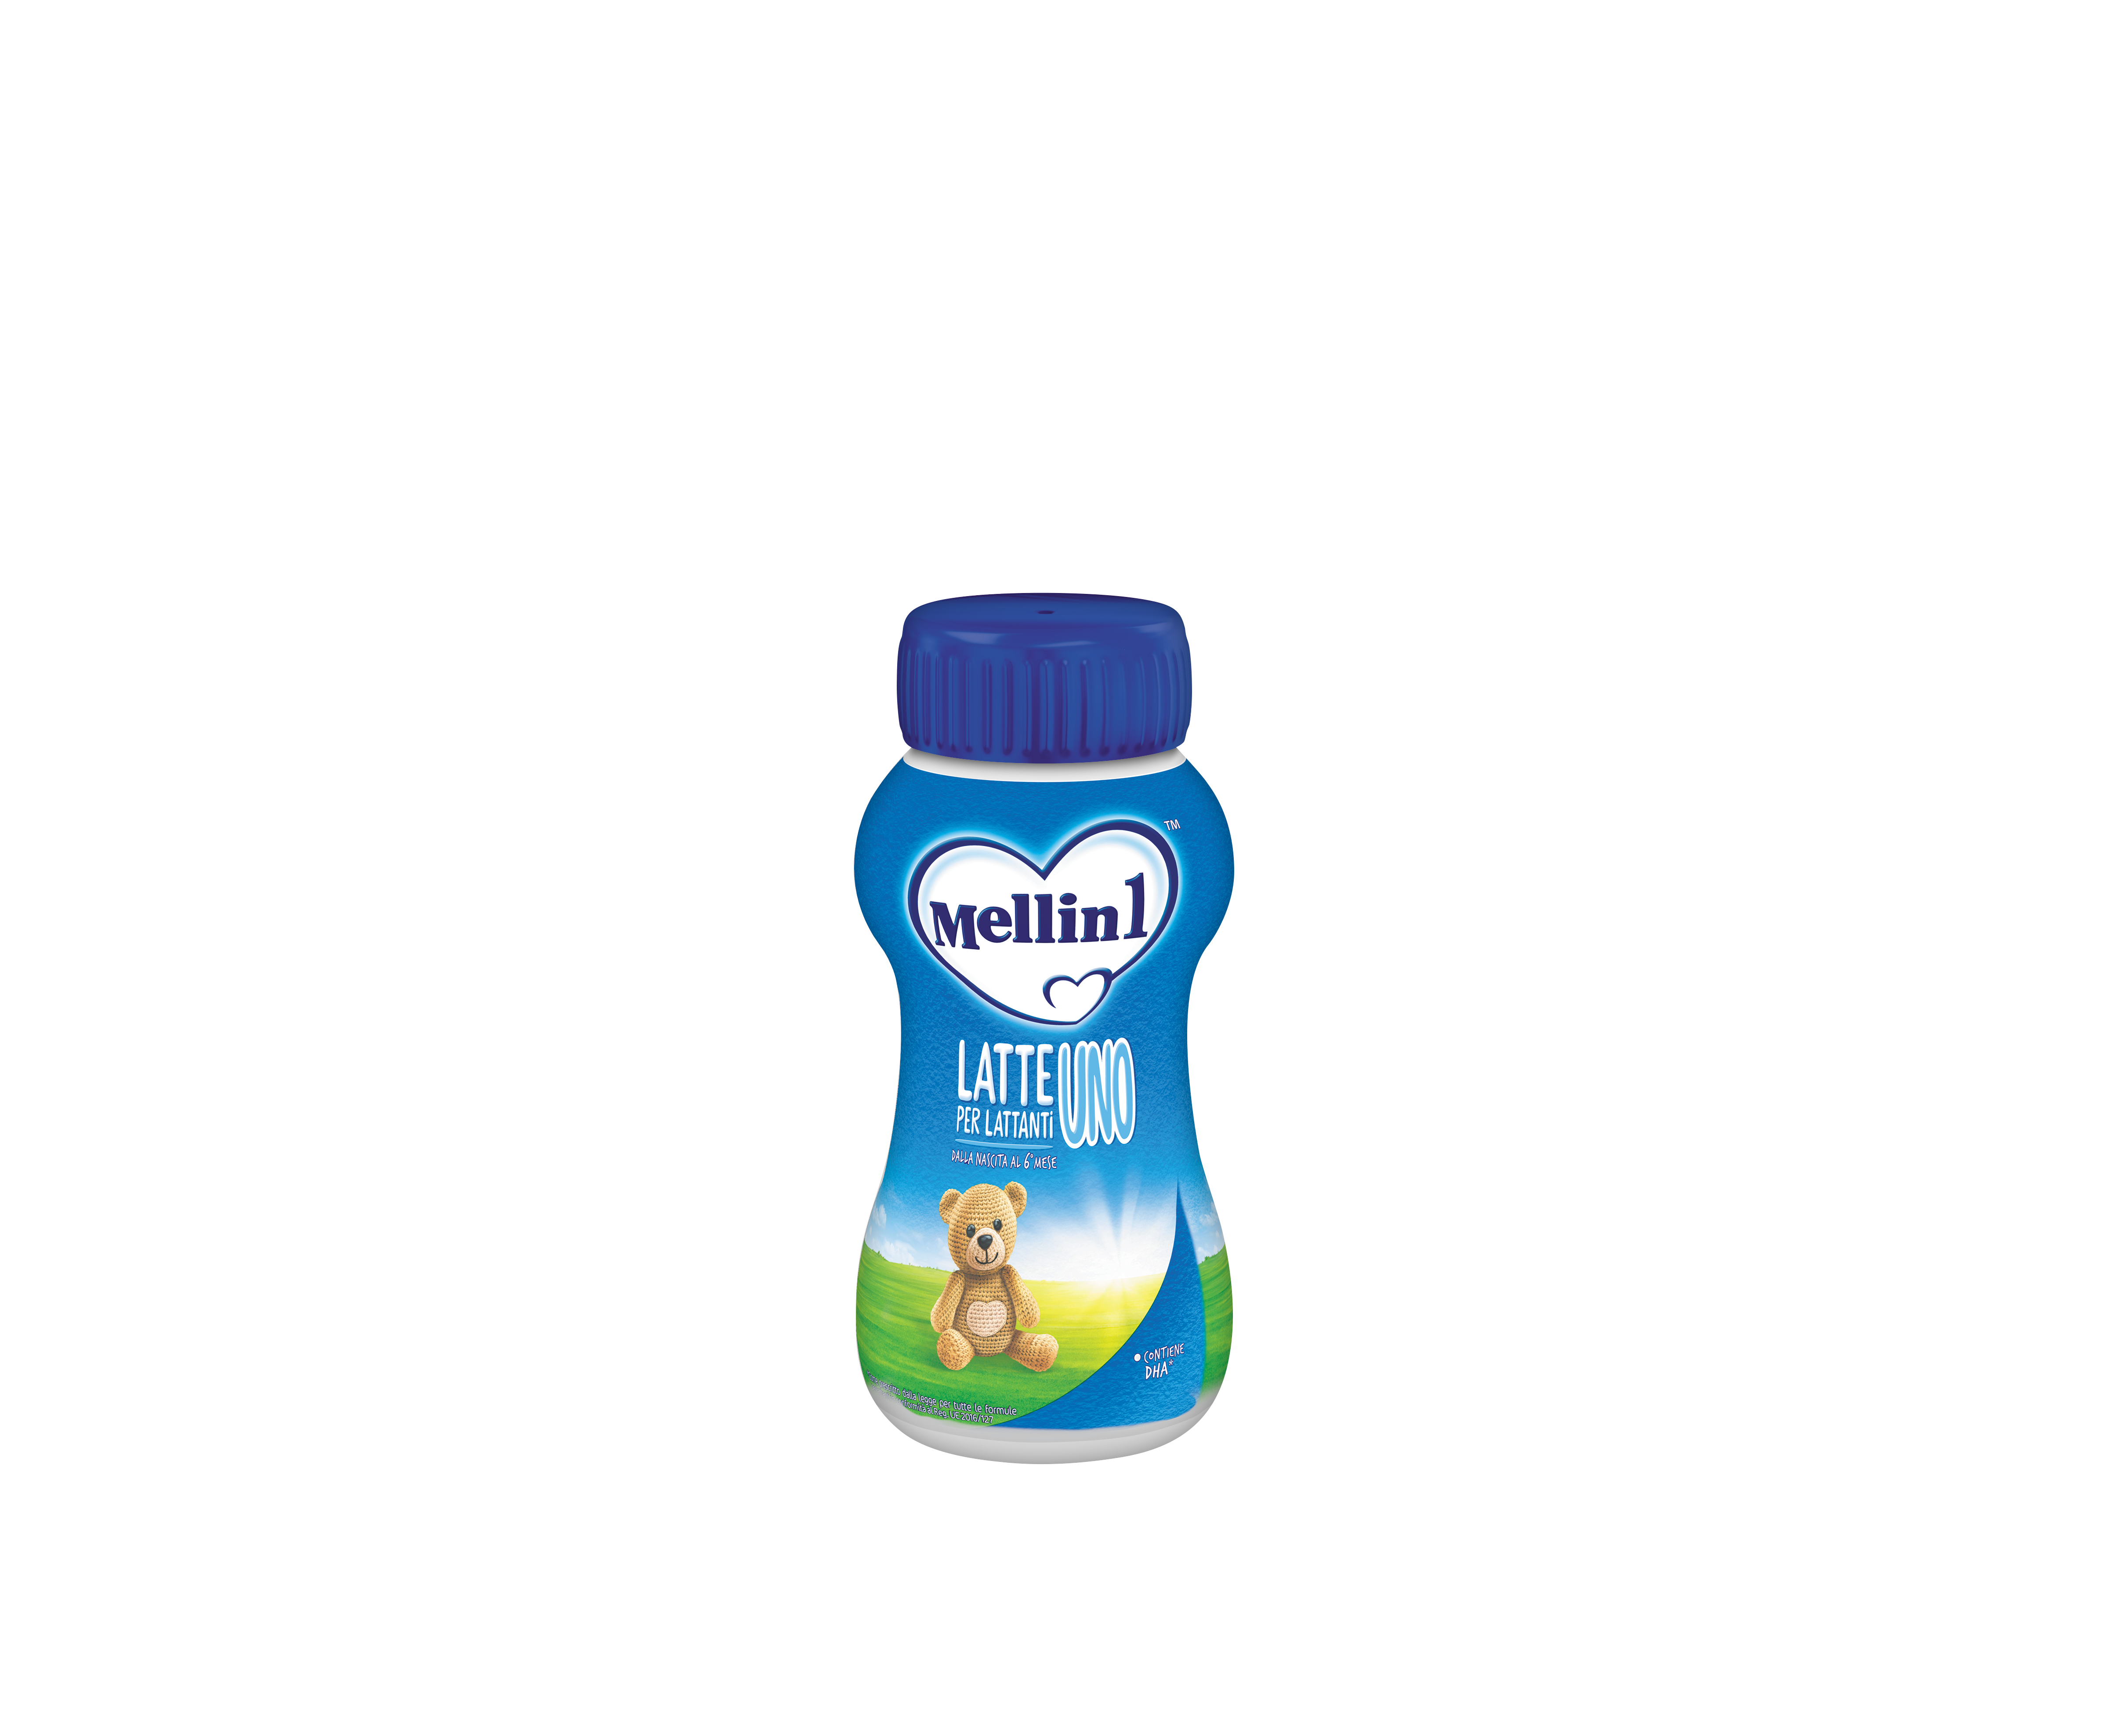 Mellin latte 1 liquido - Mellin